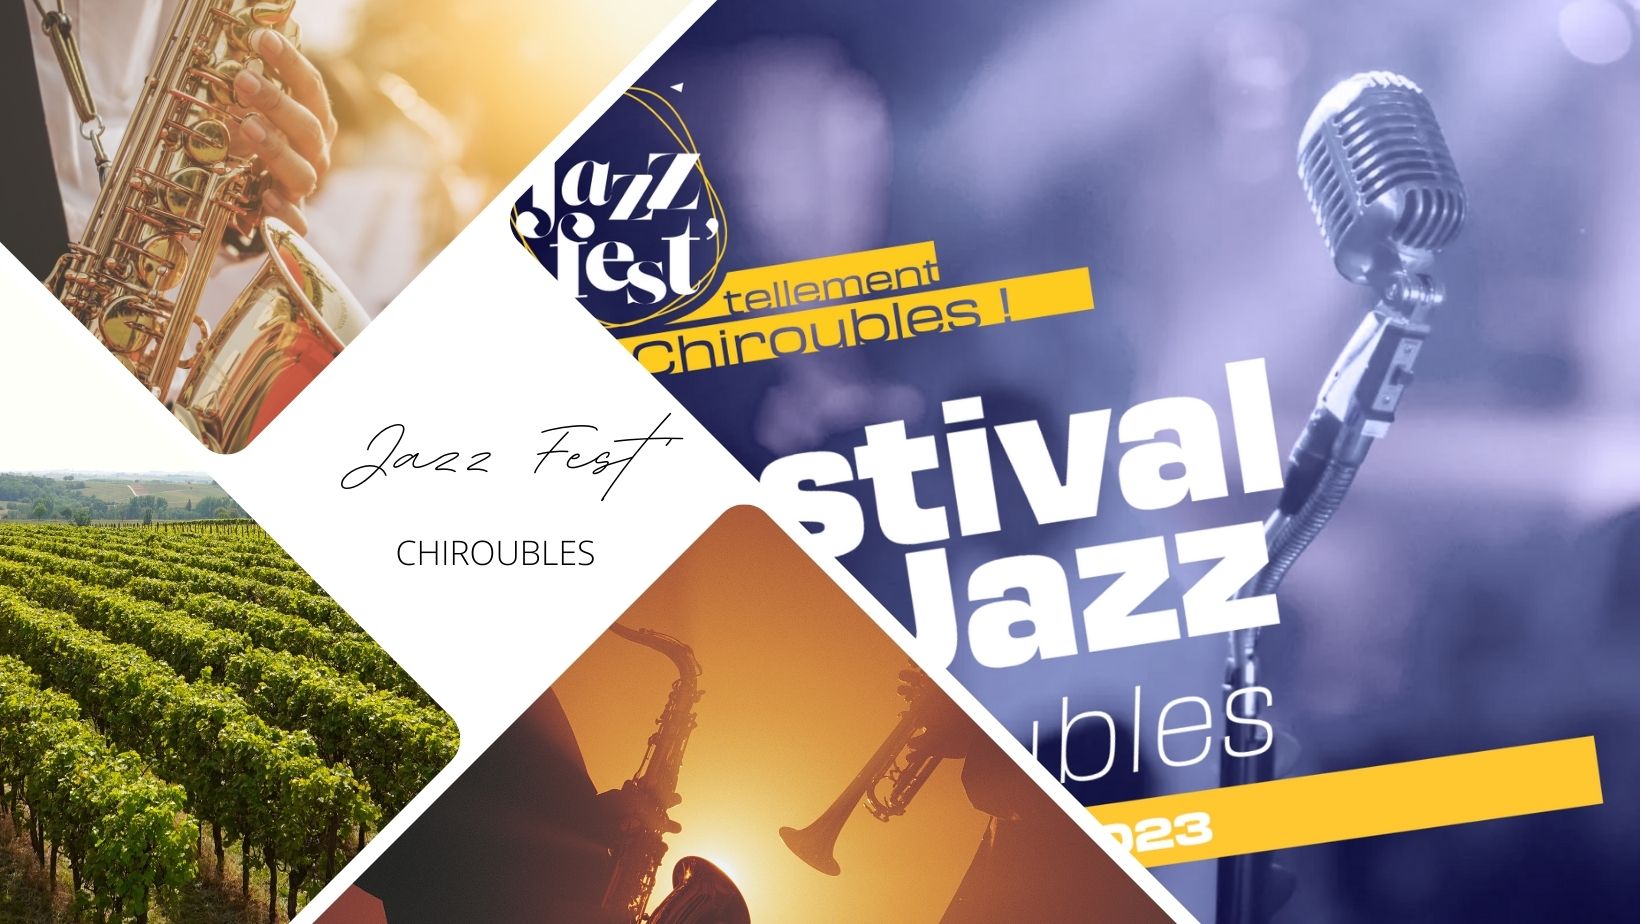 JazzFest' Chiroubles le 16 septembre